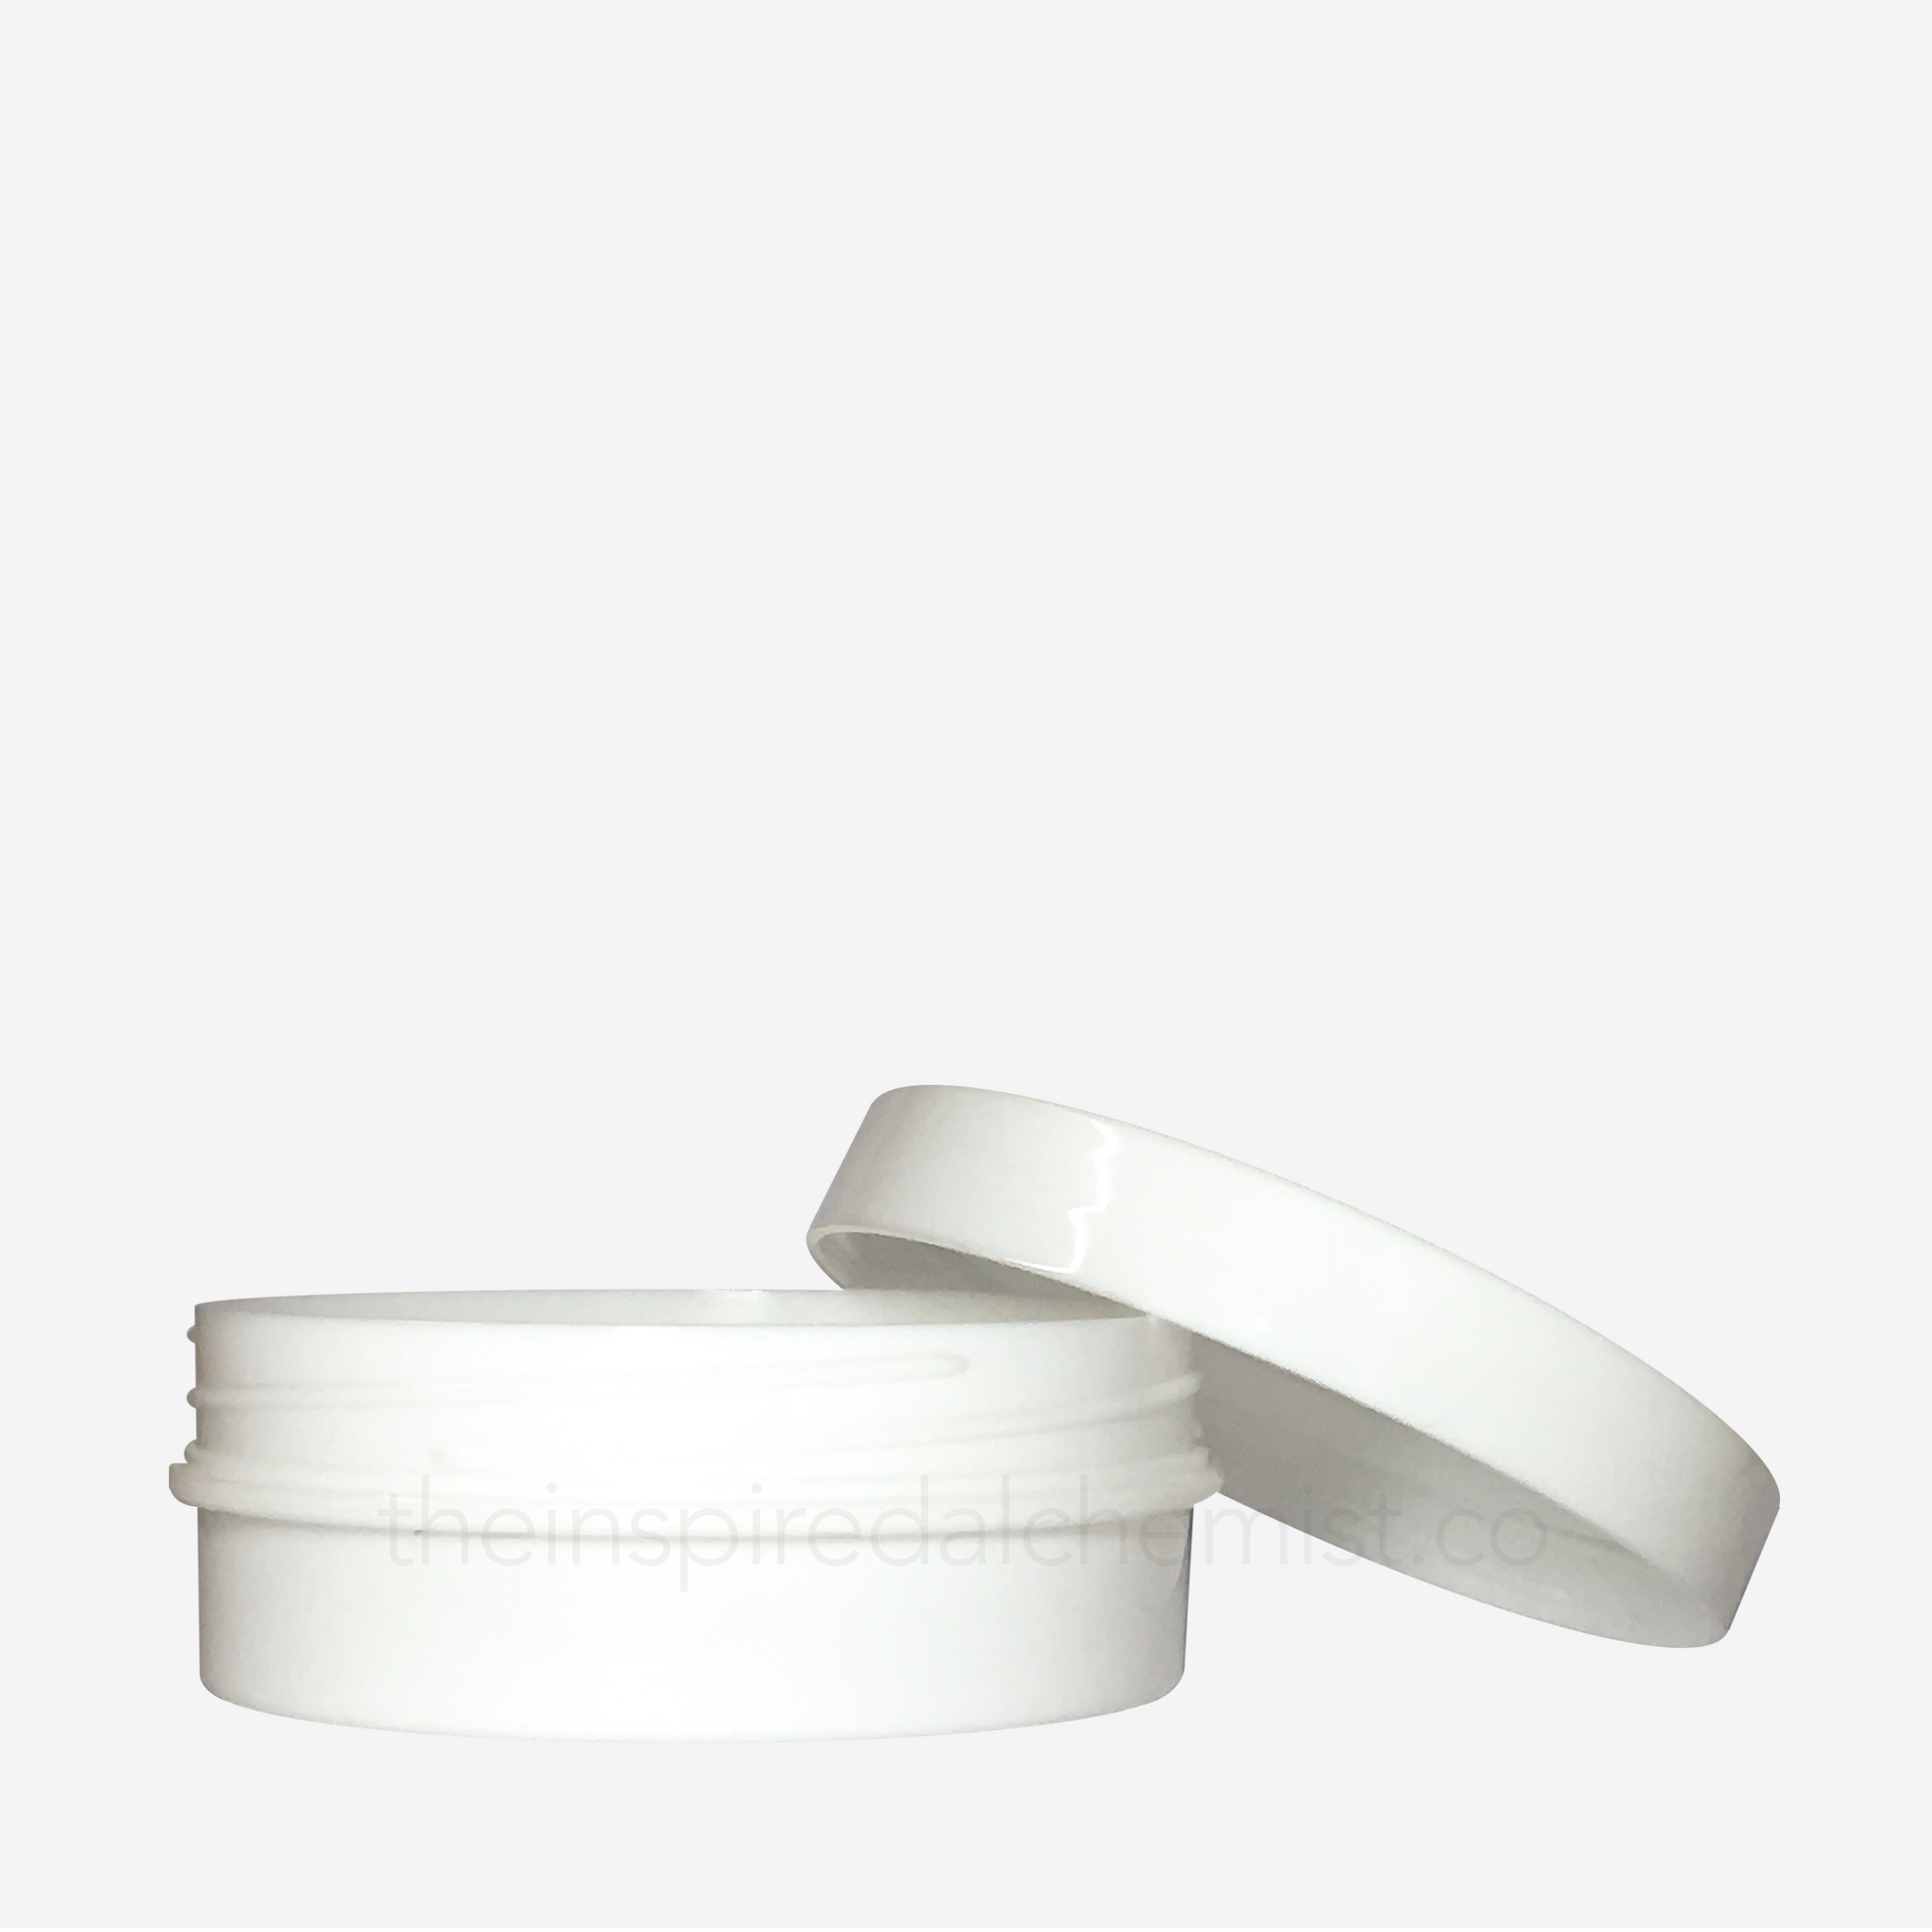 Plastic Tub Jar (Round, White) - Craftology Essentials - Philippines